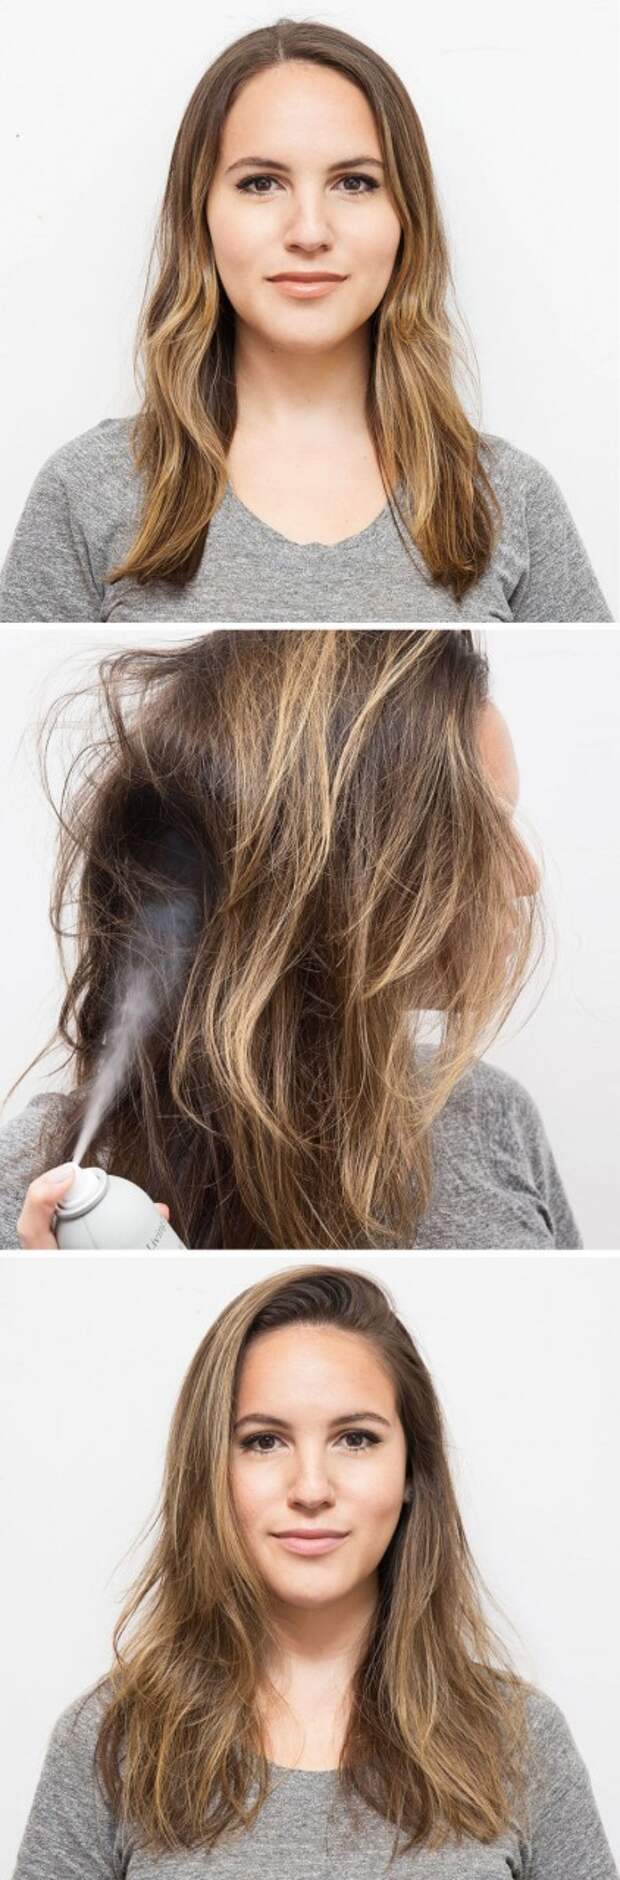 17 лайфхаков, которые помогут сделать ваши волосы более густыми и объемными